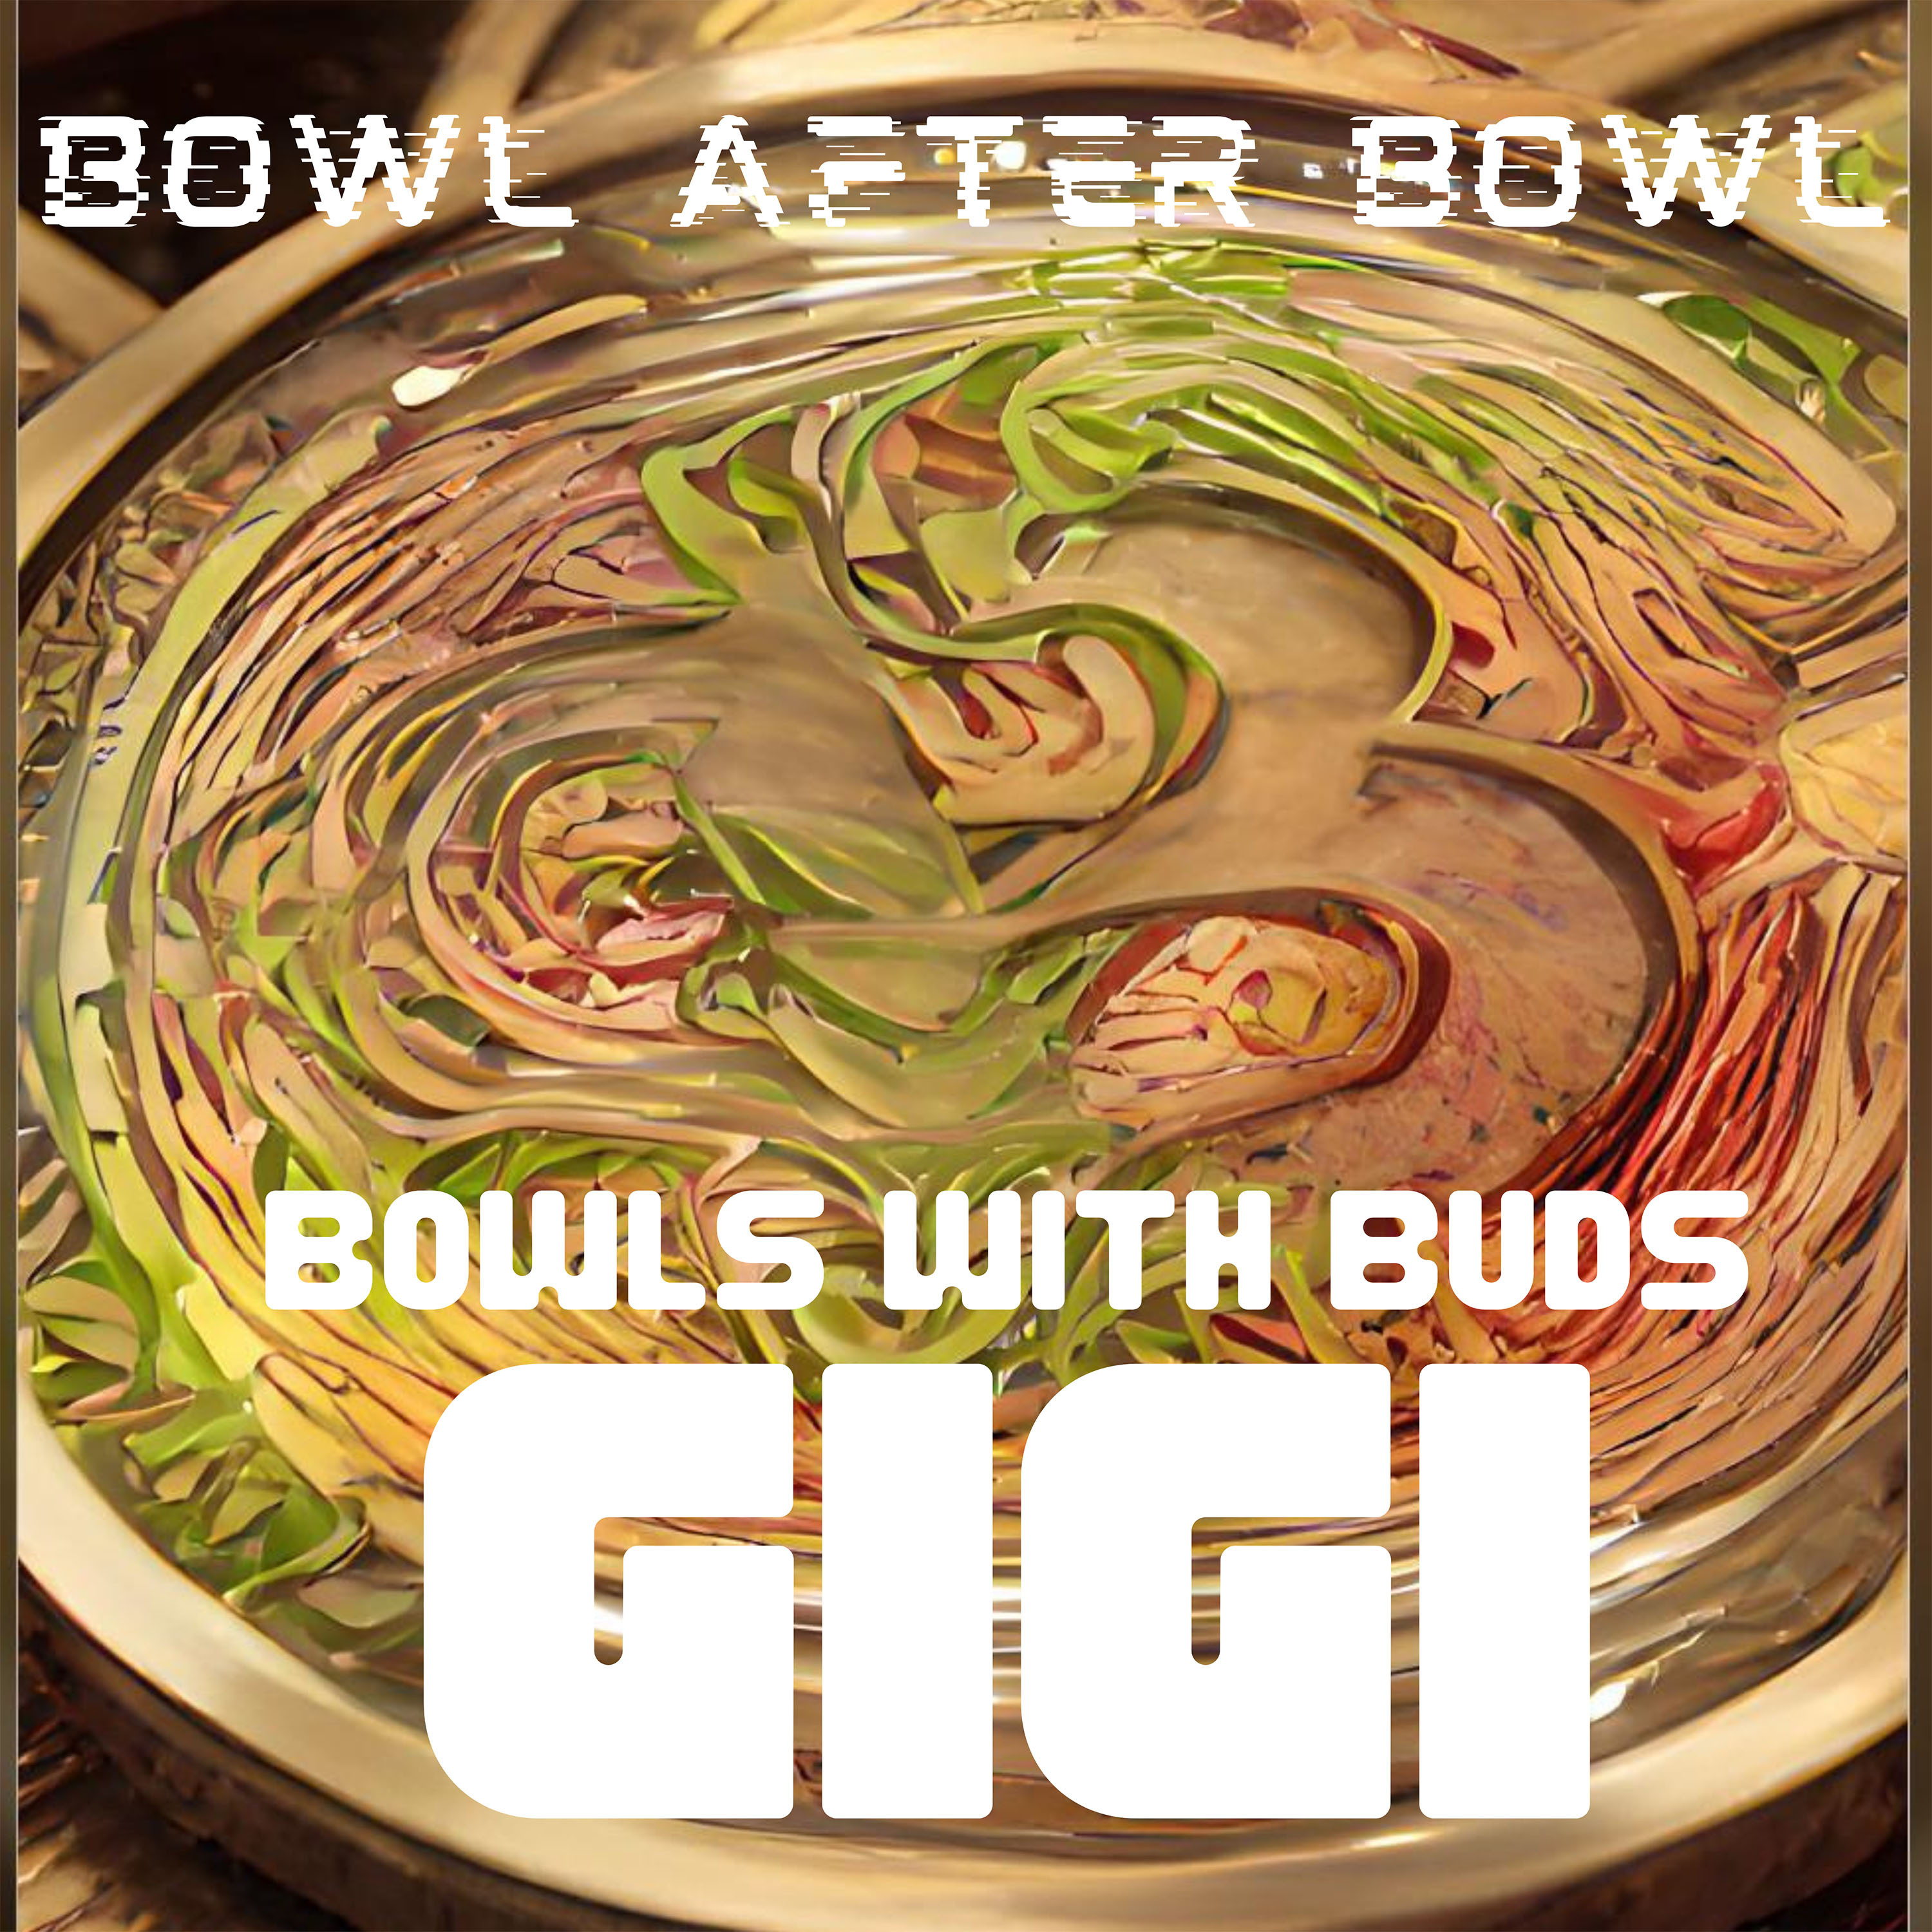 Episode 168 ★ Bowls With Buds ★ Gigi